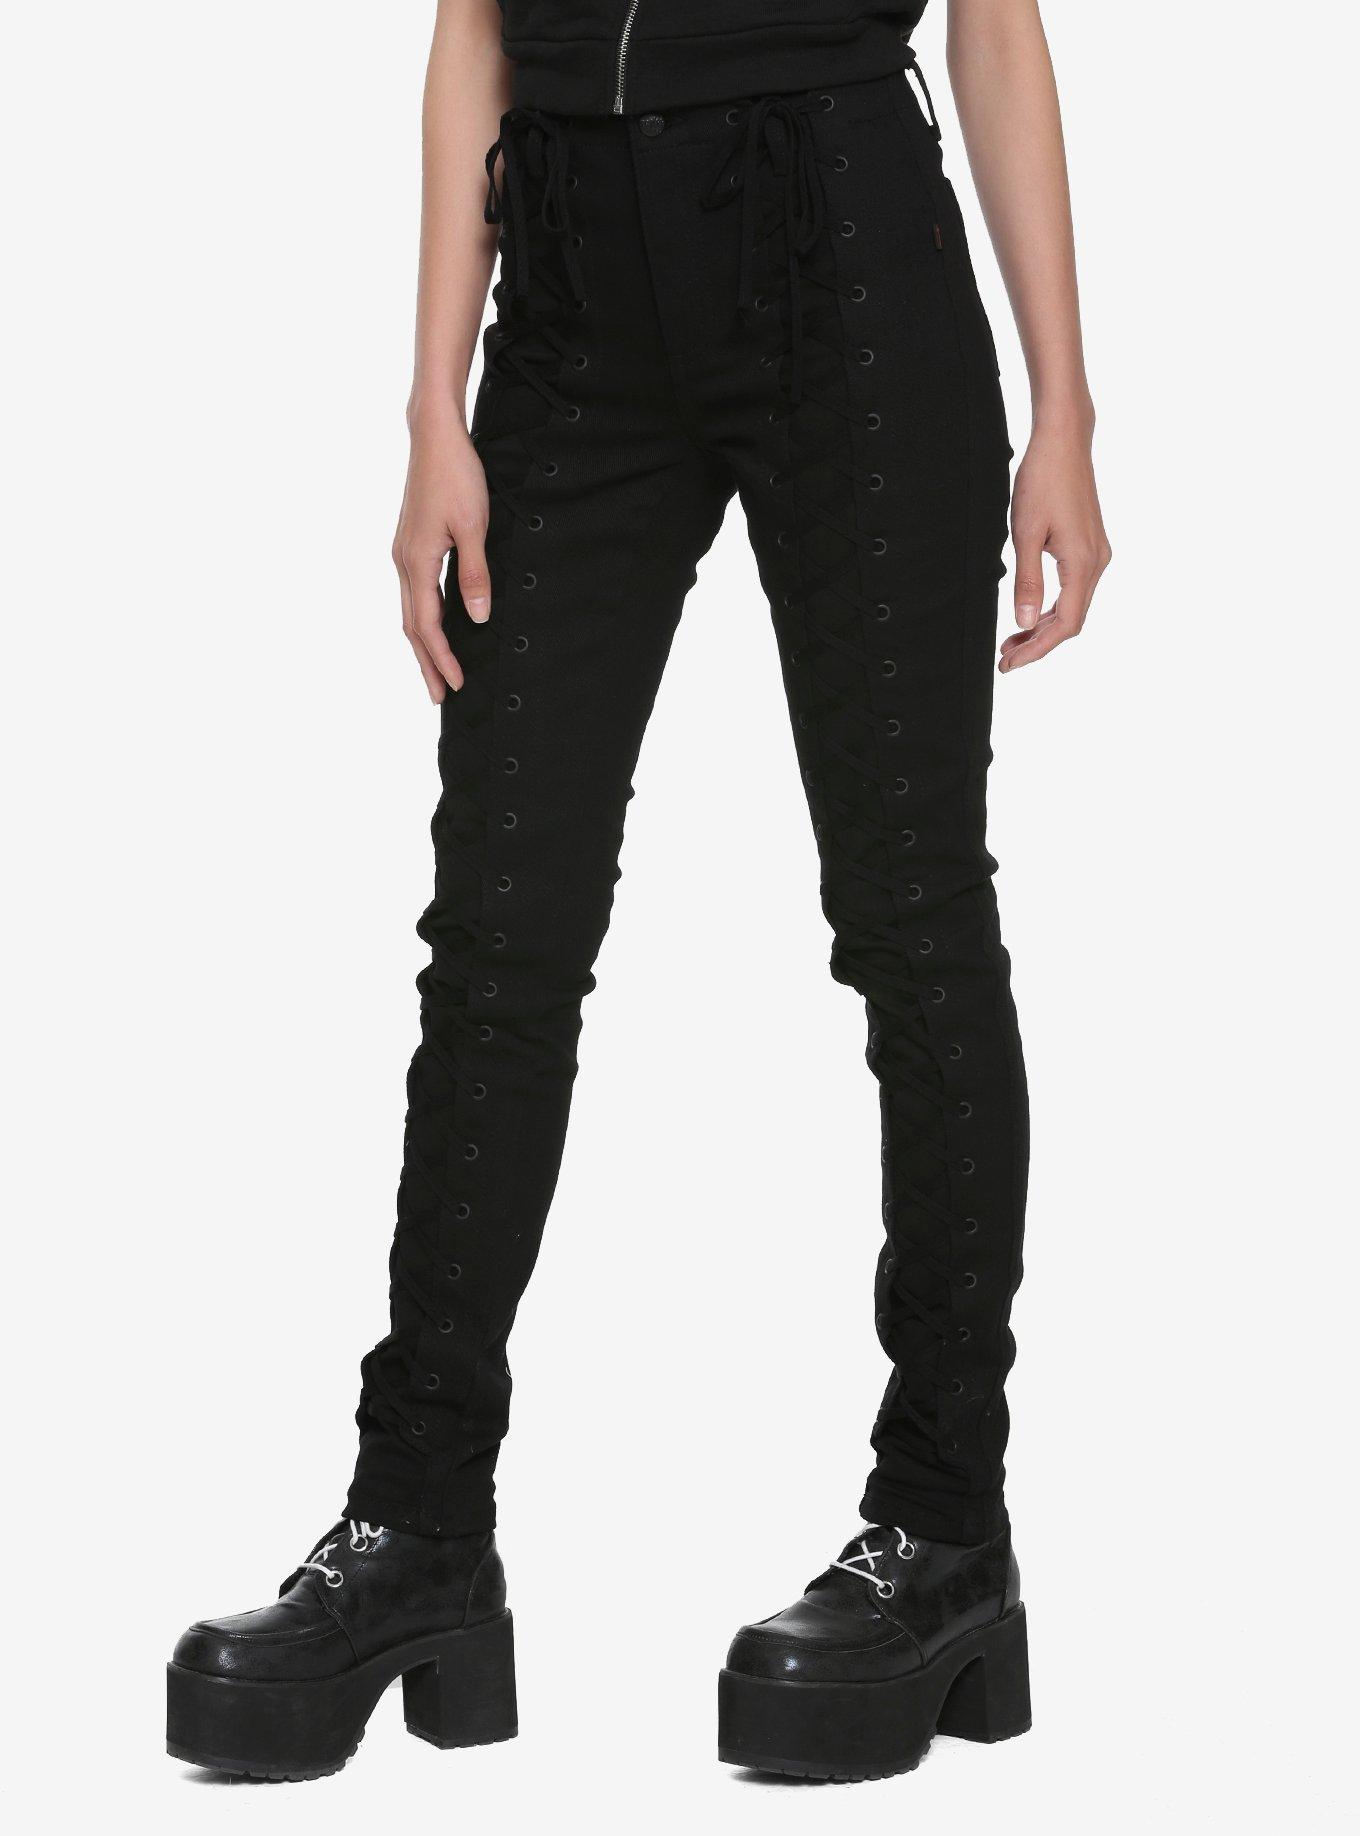 Tripp Lace-Up Front Black Jeans, BLACK, hi-res